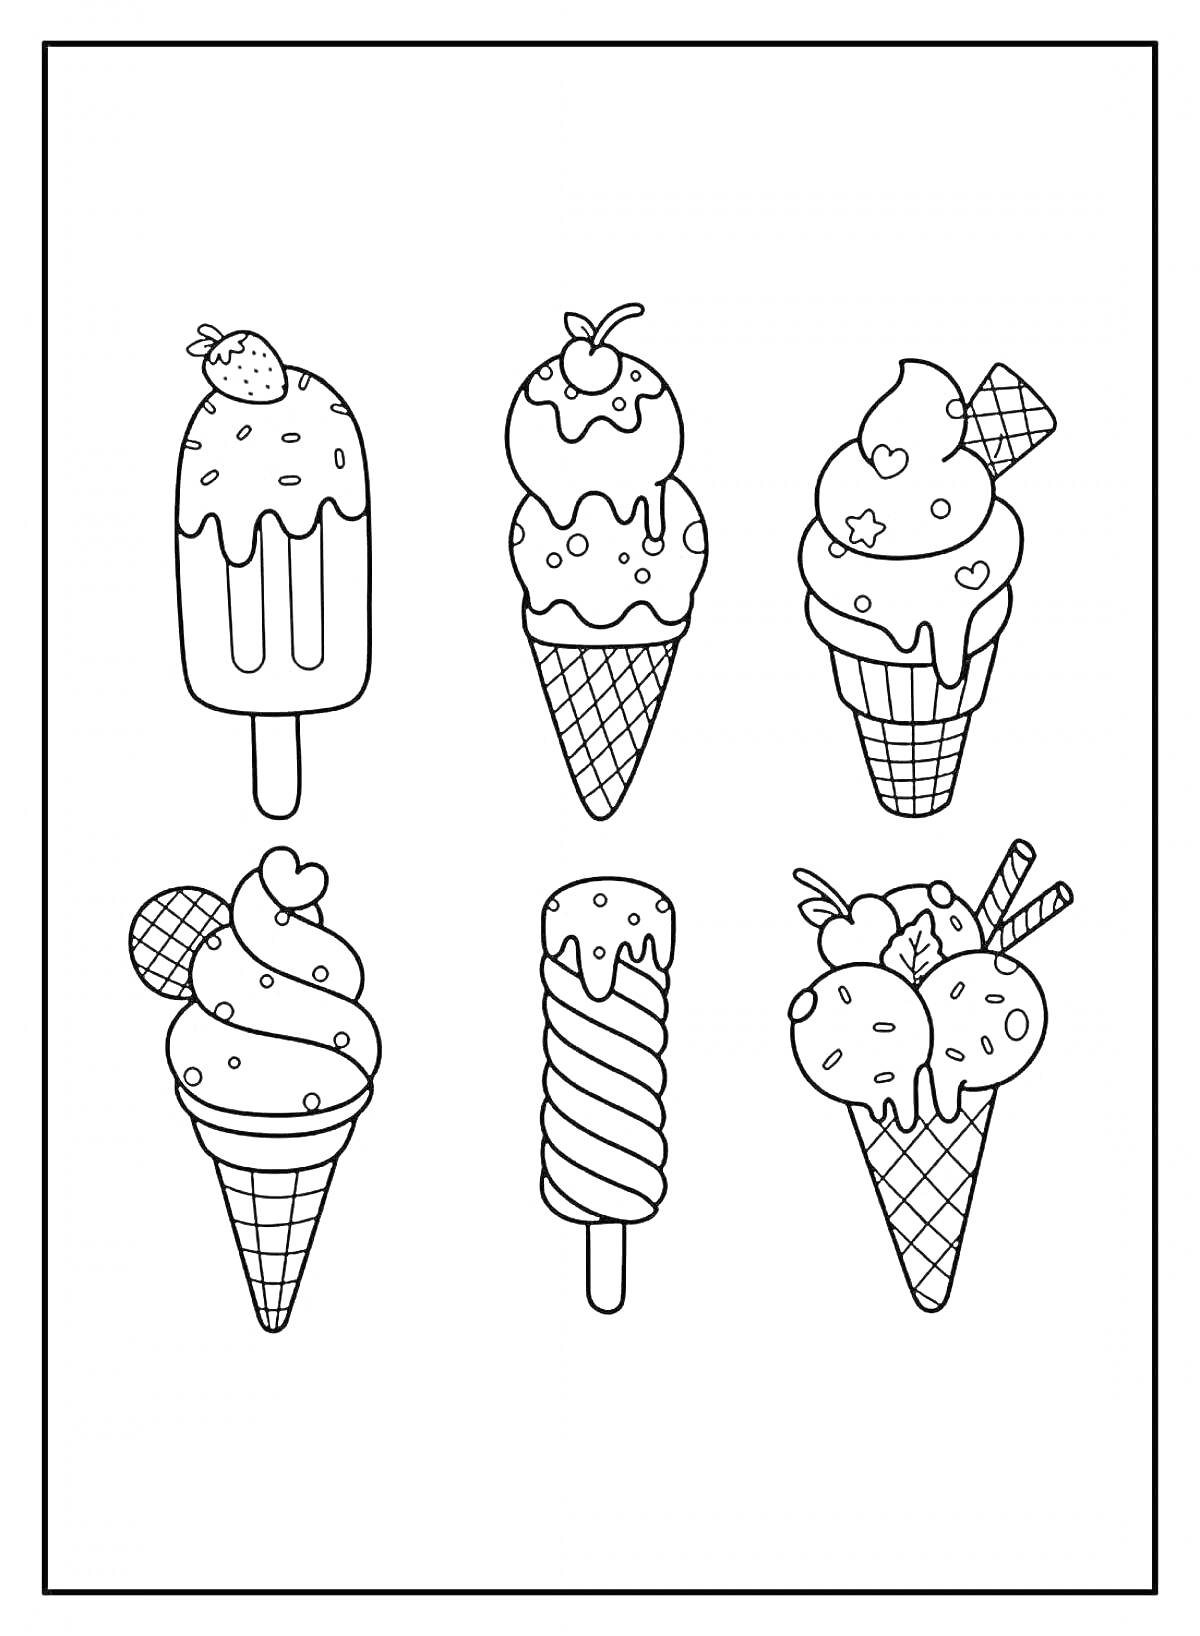 Раскраска Шесть видов мороженого (эскимо с клубникой, мороженое в вафельном рожке с вишней, мороженое в рожке с печеньем и звёздами, мороженое в рожке с пятью шариками и печеньем, мороженое на палочке в спиралях, мороженое в вафельном рожке с двумя шариками и палоч